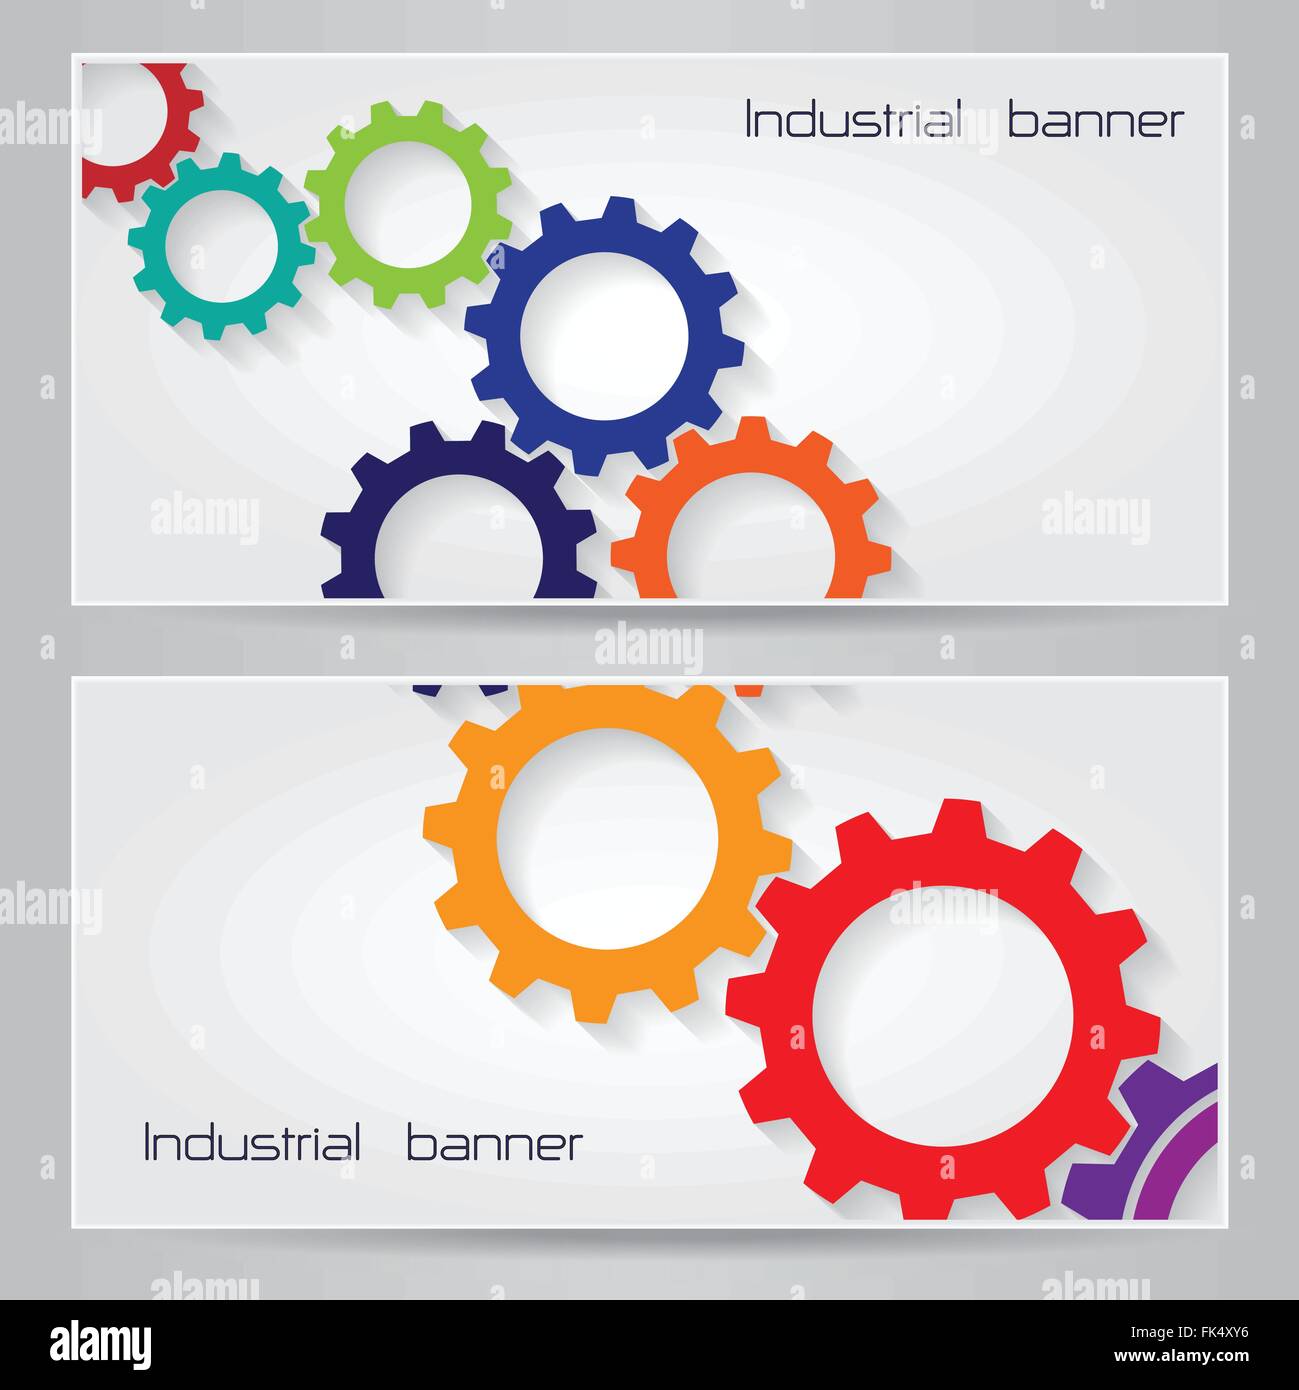 Industrielle Banner Hintergrund Konzept. Einsetzbar für Cover-Design, Website Hintergrund oder Werbung. Vektor-illustration Stock Vektor